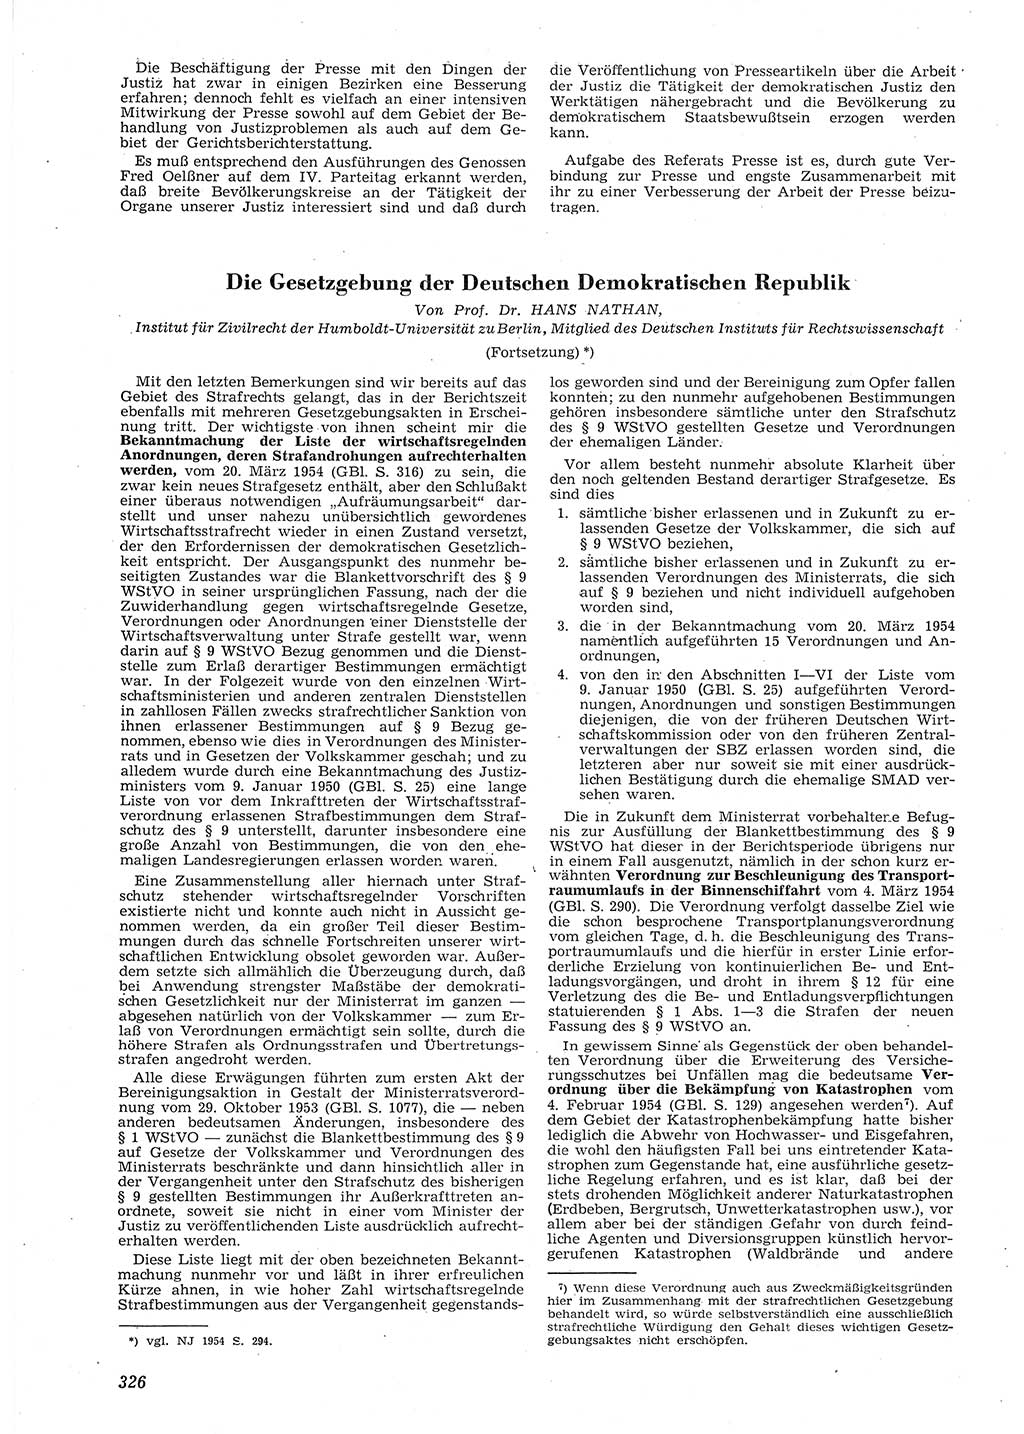 Neue Justiz (NJ), Zeitschrift für Recht und Rechtswissenschaft [Deutsche Demokratische Republik (DDR)], 8. Jahrgang 1954, Seite 326 (NJ DDR 1954, S. 326)